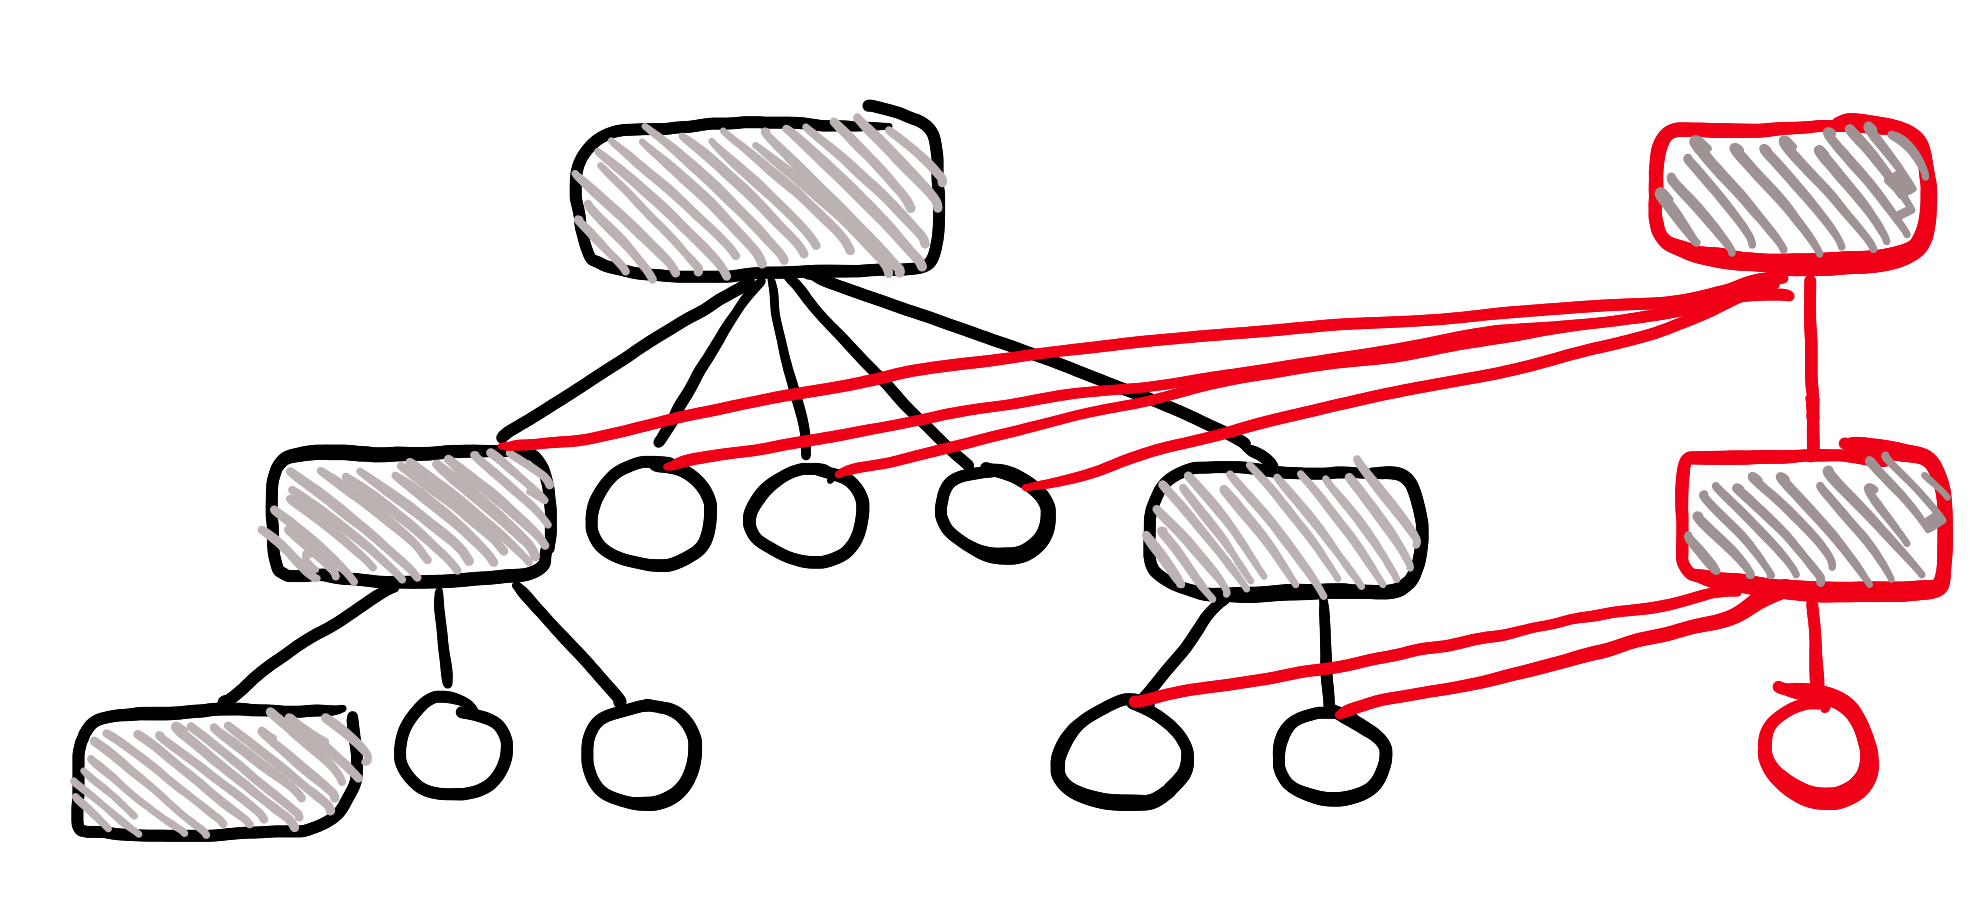 Visualisering av grunnleggende trestruktur-basert datastruktur med kun deler av treet kopiert